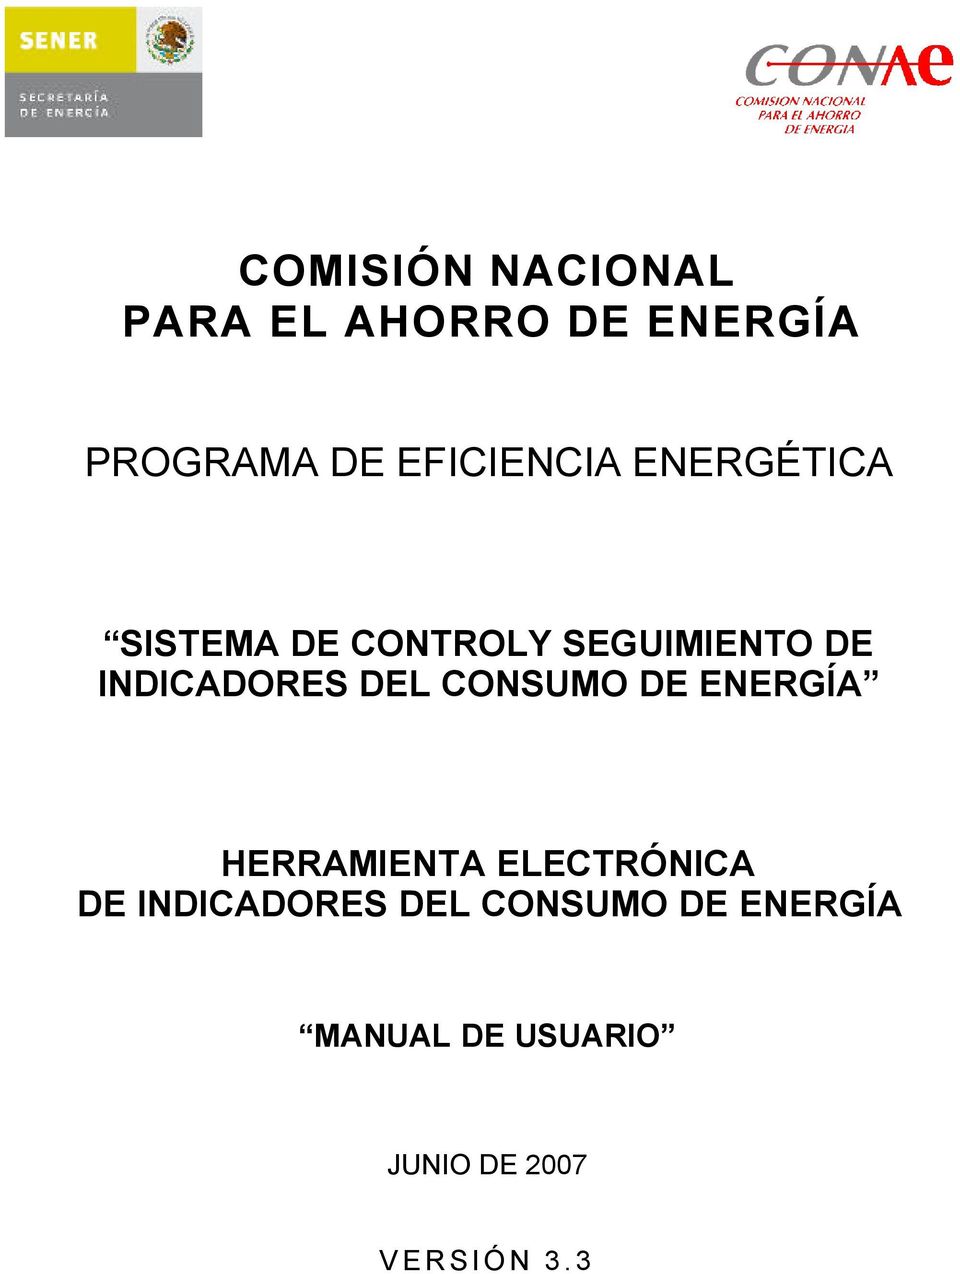 INDICADORES DEL CONSUMO DE ENERGÍA HERRAMIENTA ELECTRÓNICA DE